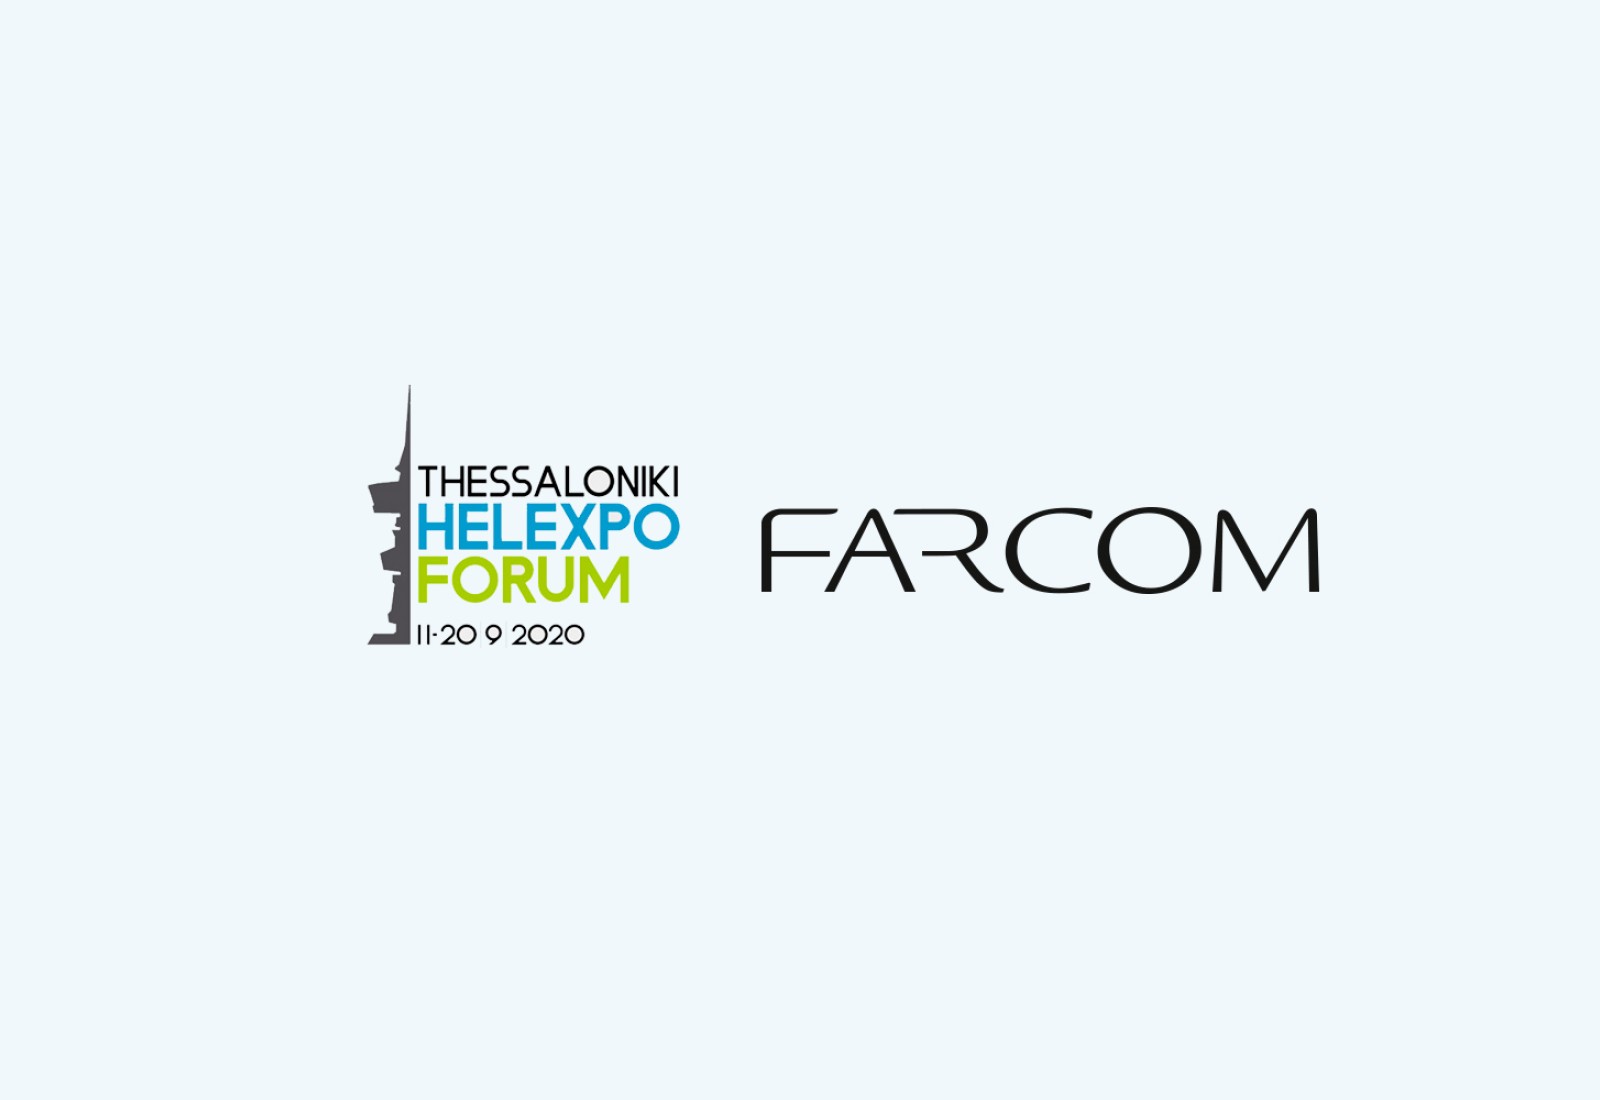 Η FARCOM έμπρακτος υποστηρικτής της ασφαλούς διεξαγωγής του THESSALONIKI HELEXPO FORUM 2020